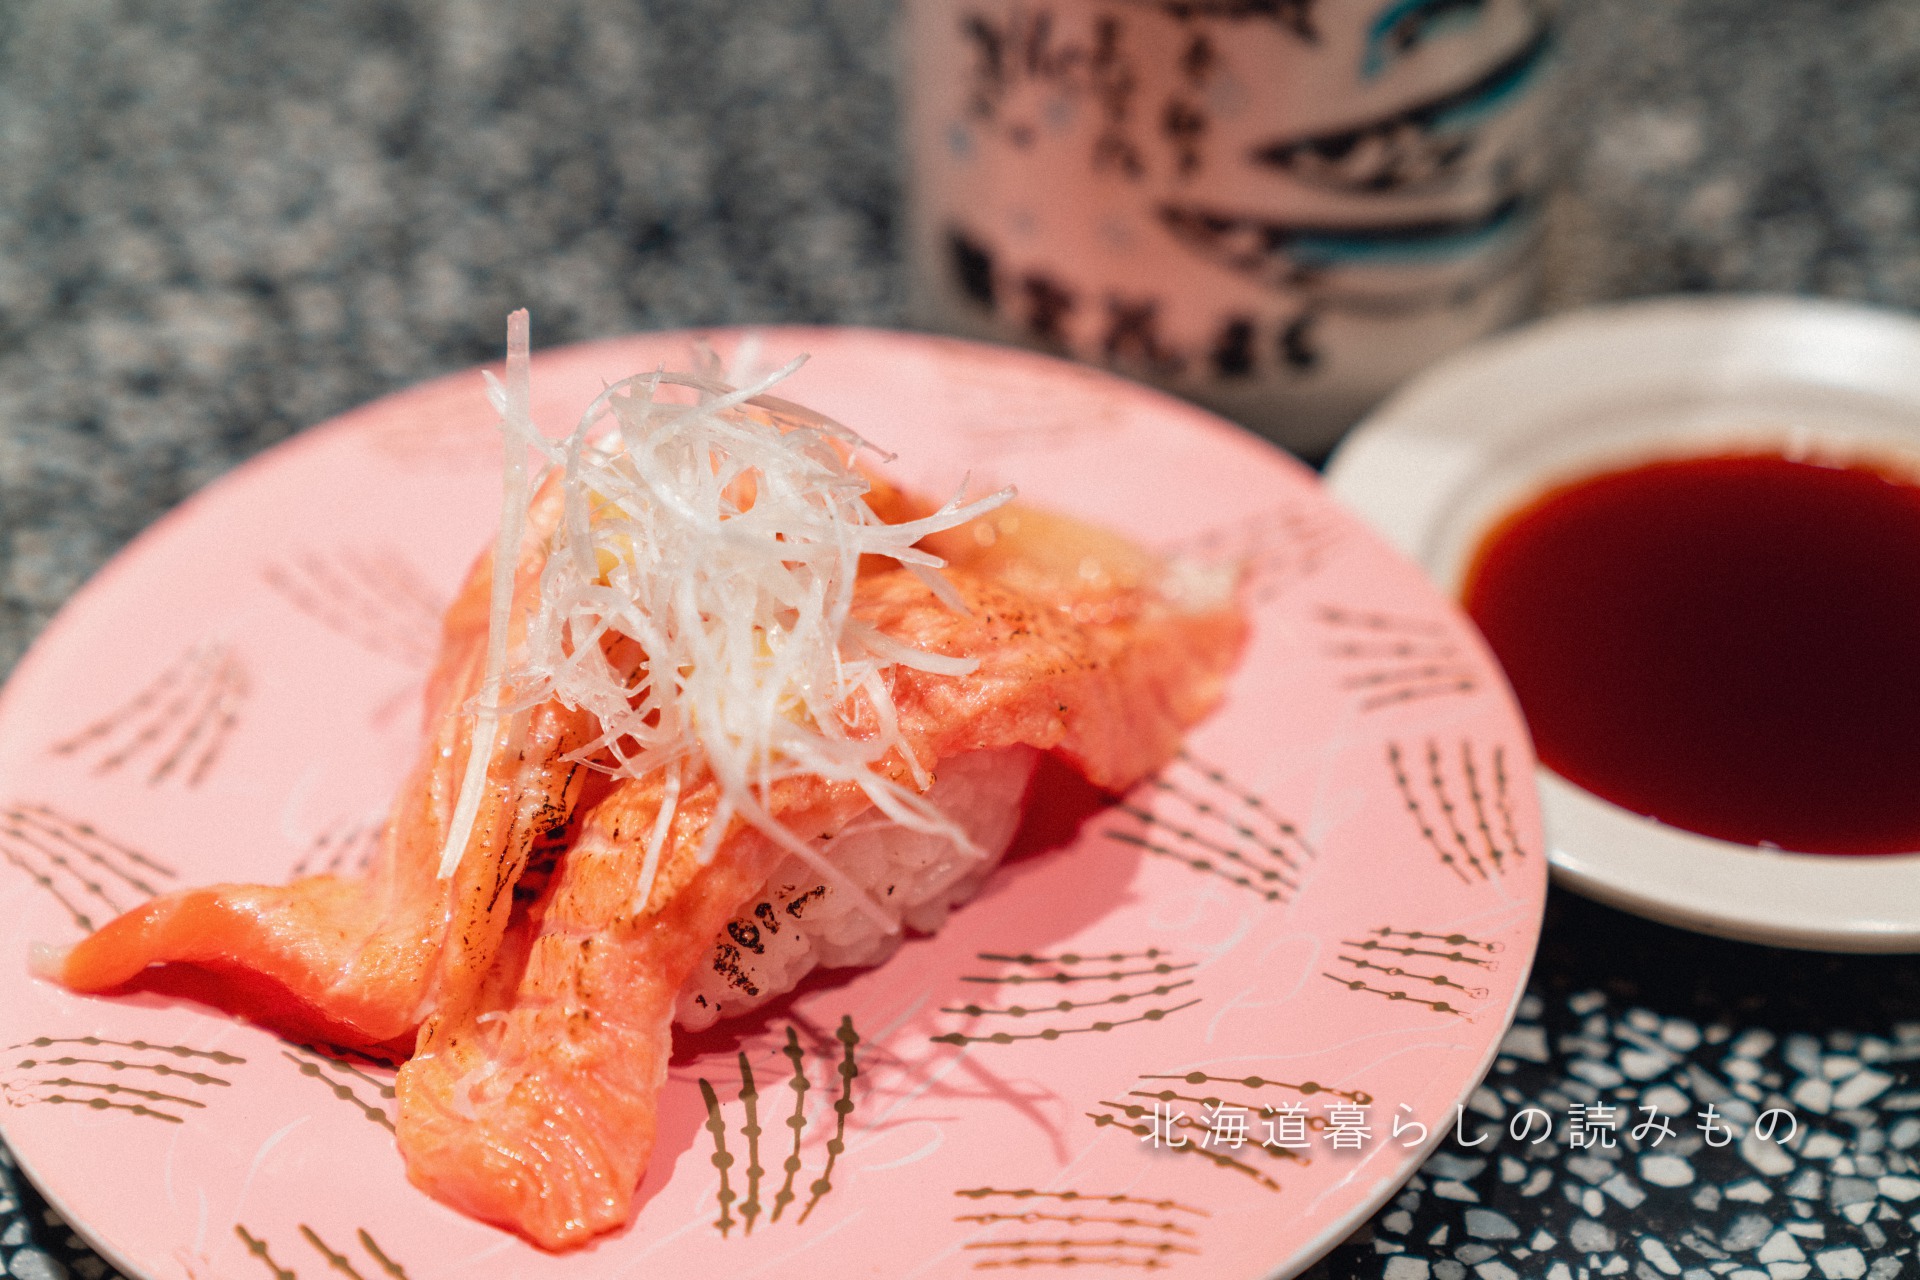 回転寿司 根室花まるのメニュー「炙りサーモン」の写真